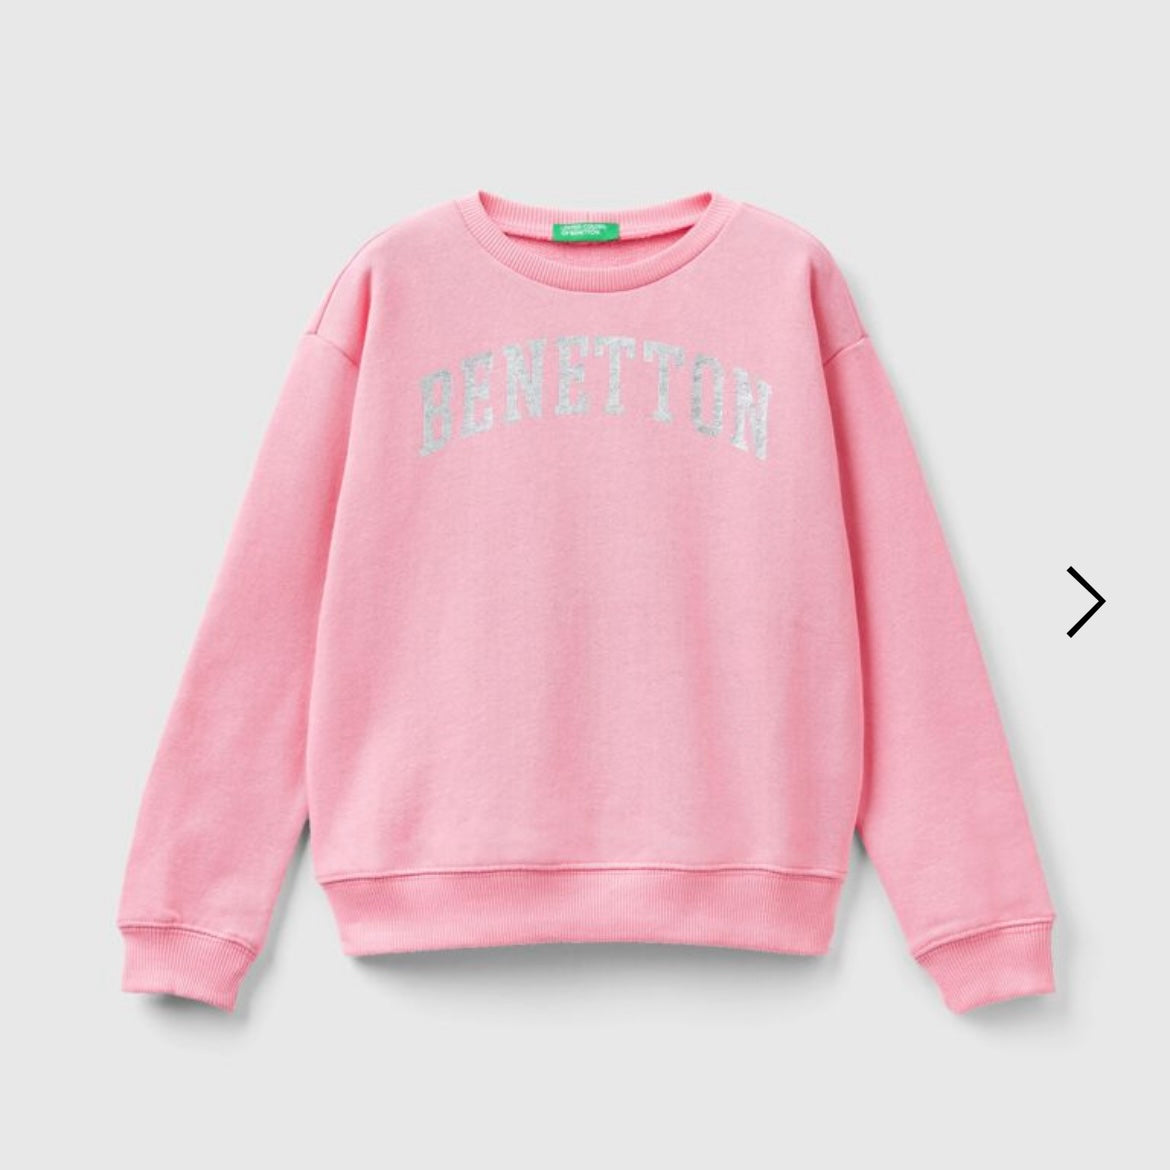 Junior Girls Pink Cotton Sweatshirt with Glitter Logo